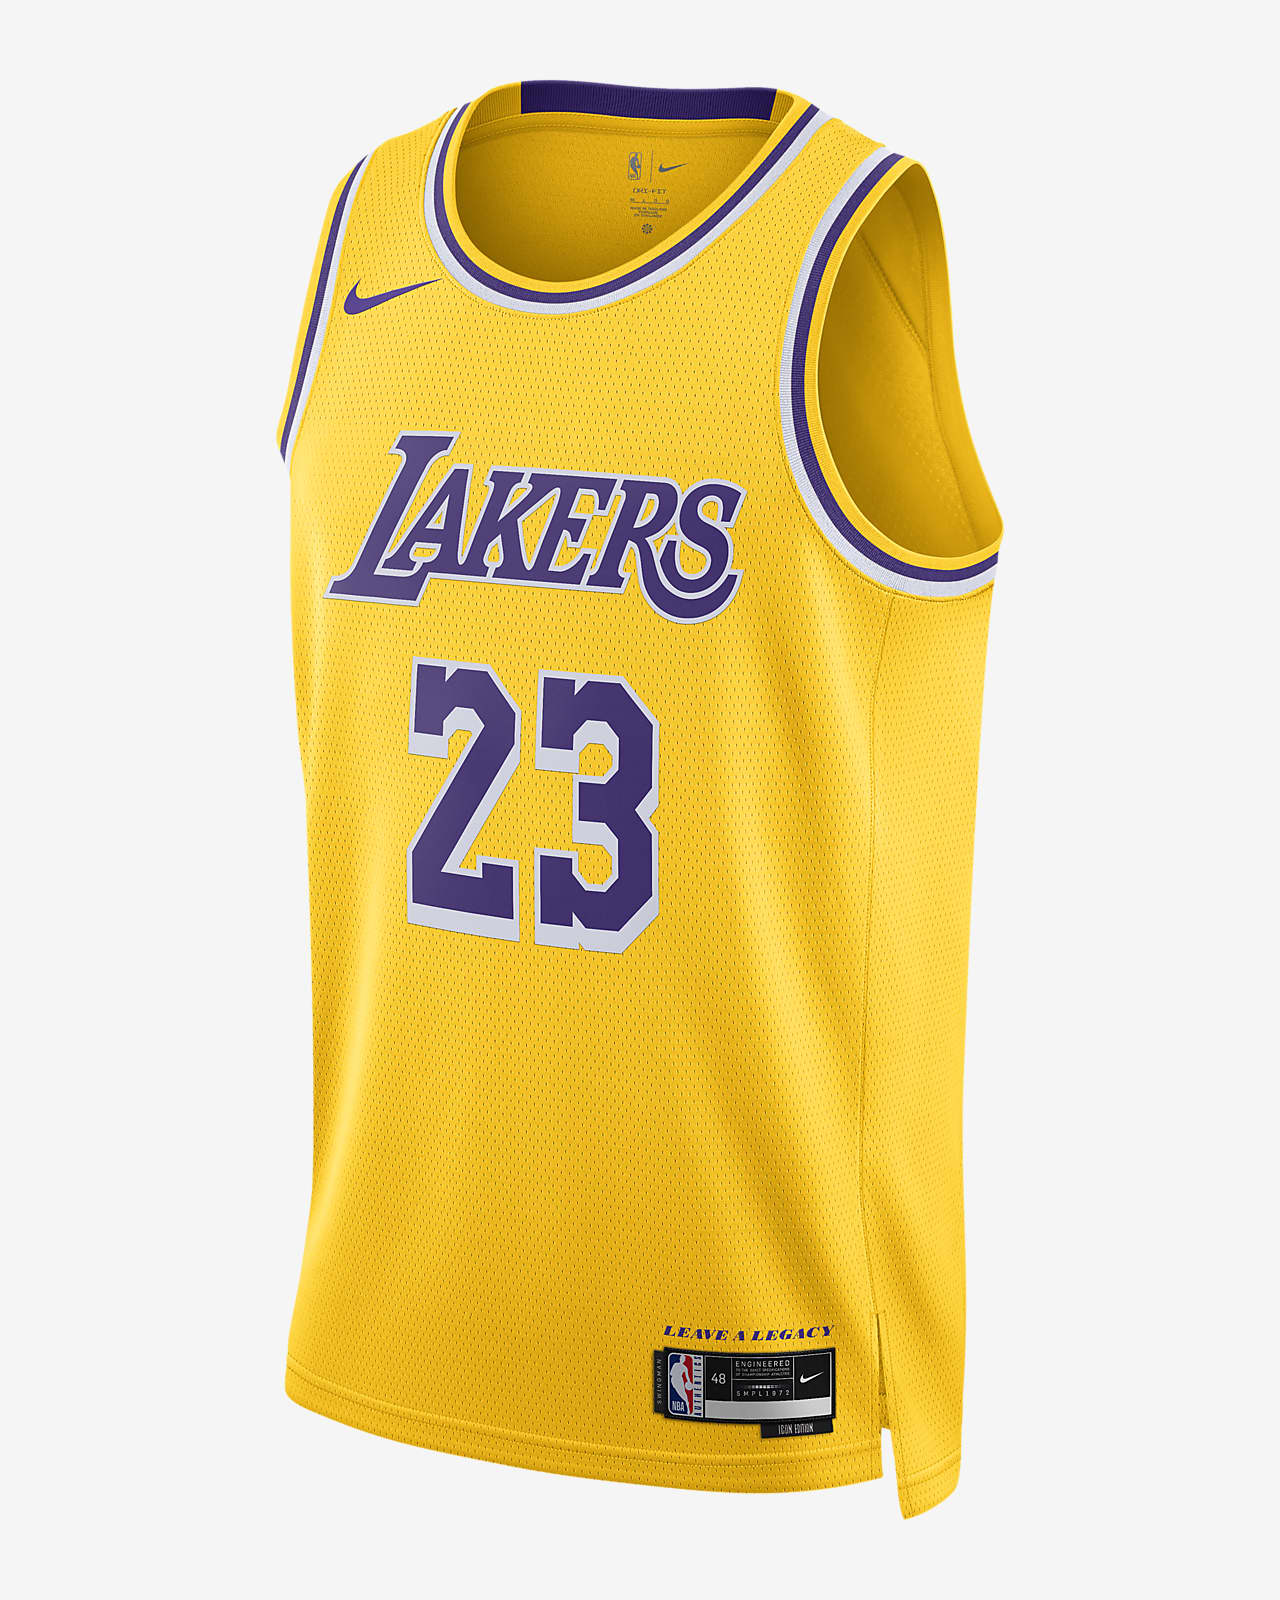 2022/23 赛季洛杉矶湖人队 Icon Edition Nike Dri-FIT NBA Swingman Jersey 男子速干球衣